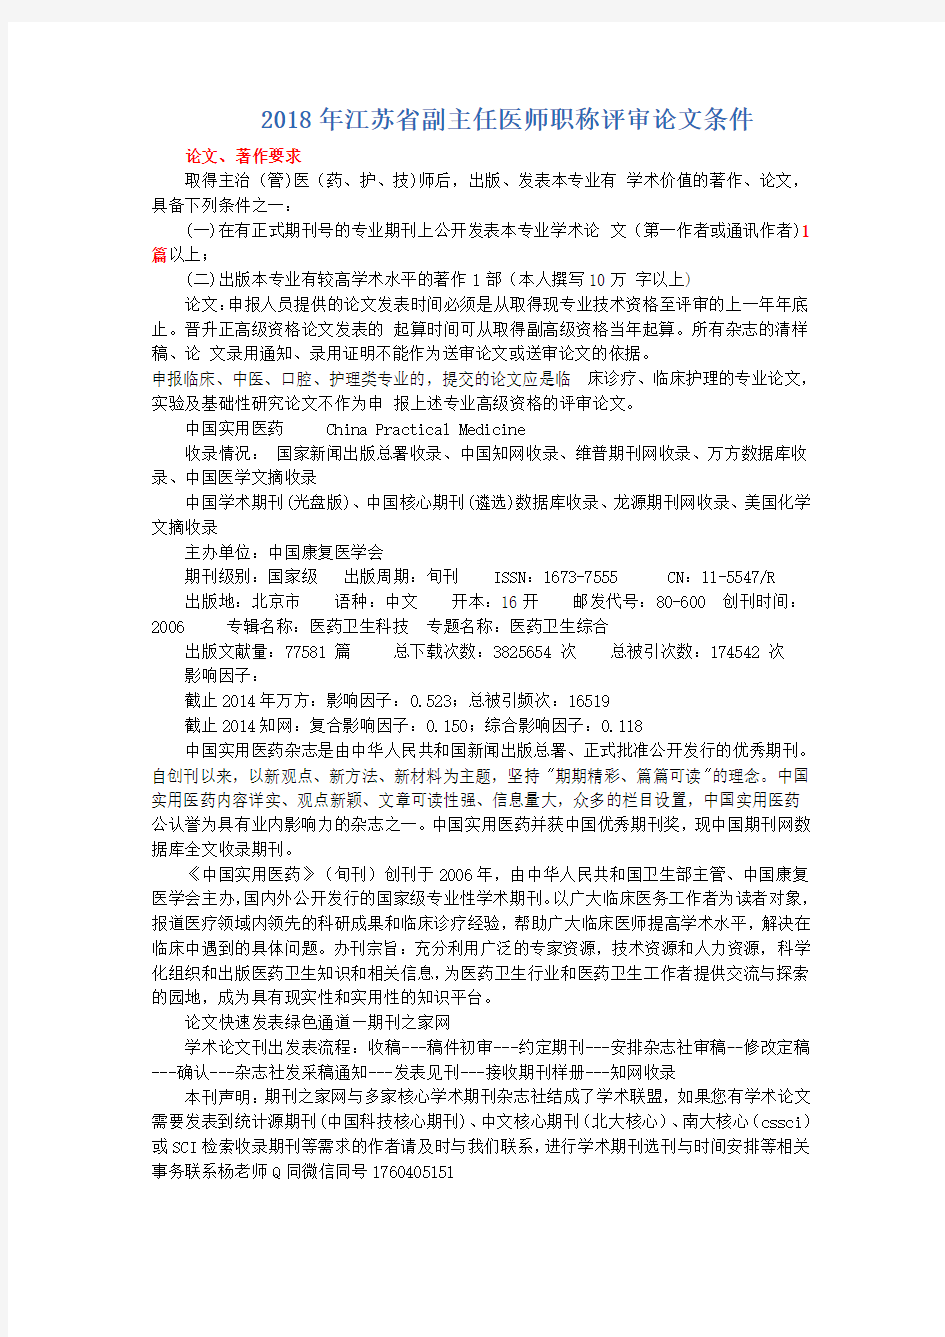 2018年江苏省副主任医师职称评审论文条件